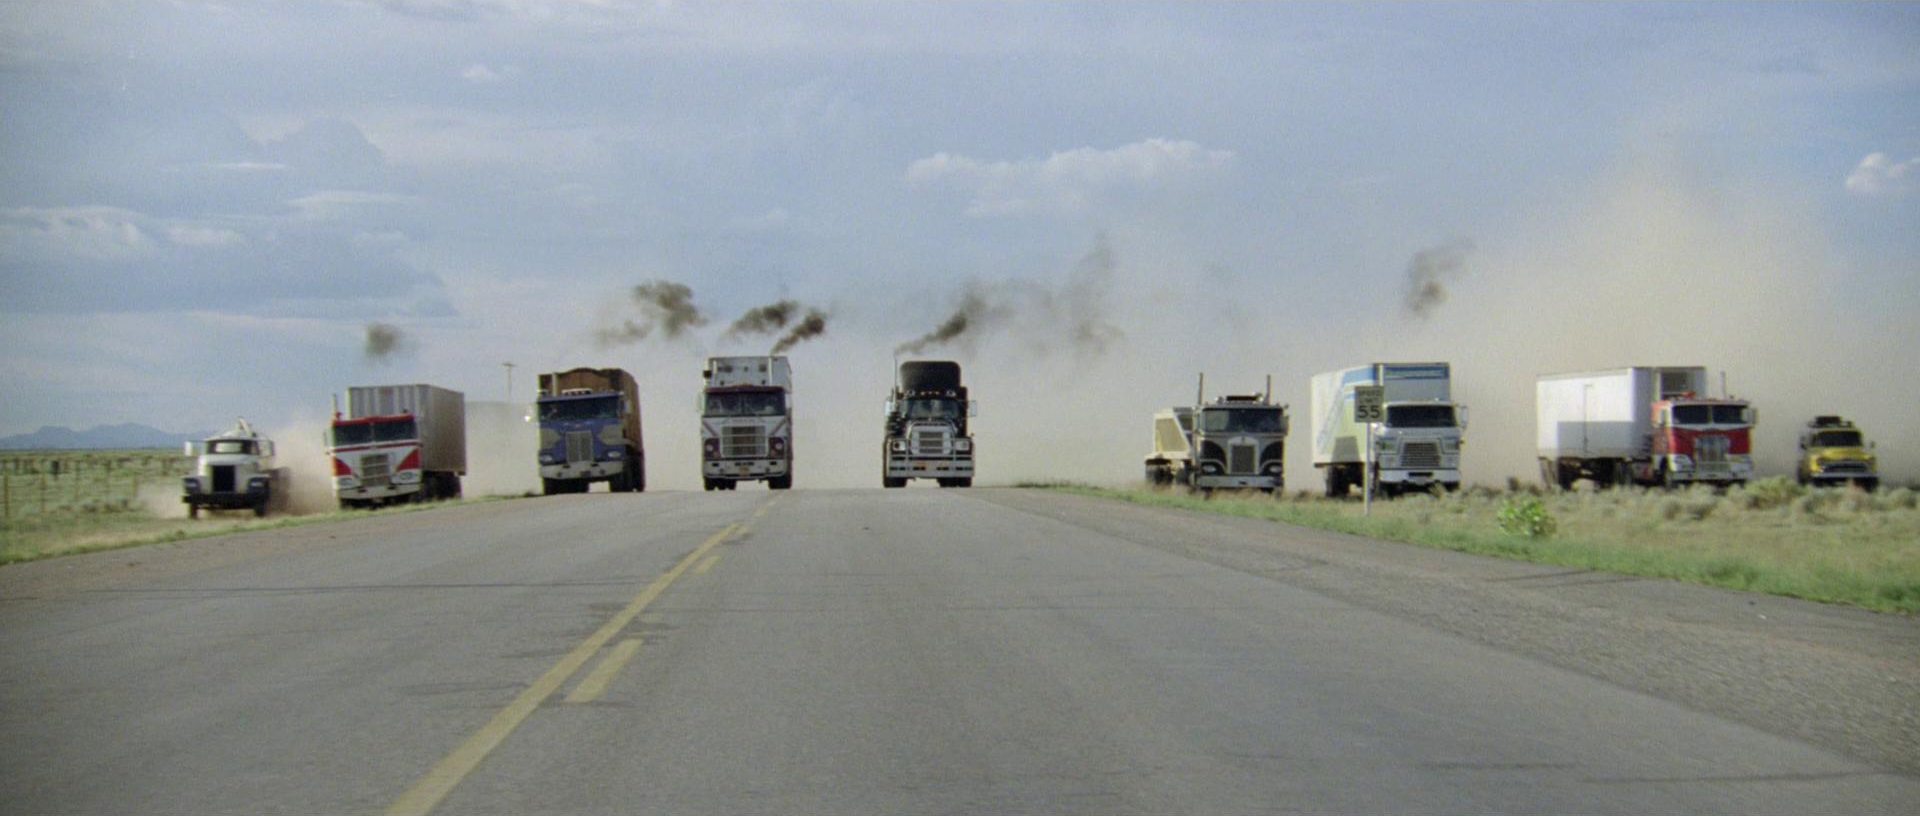 Frontalaufnahme von parallel fahrenden Trucks am Highway-Horizont.